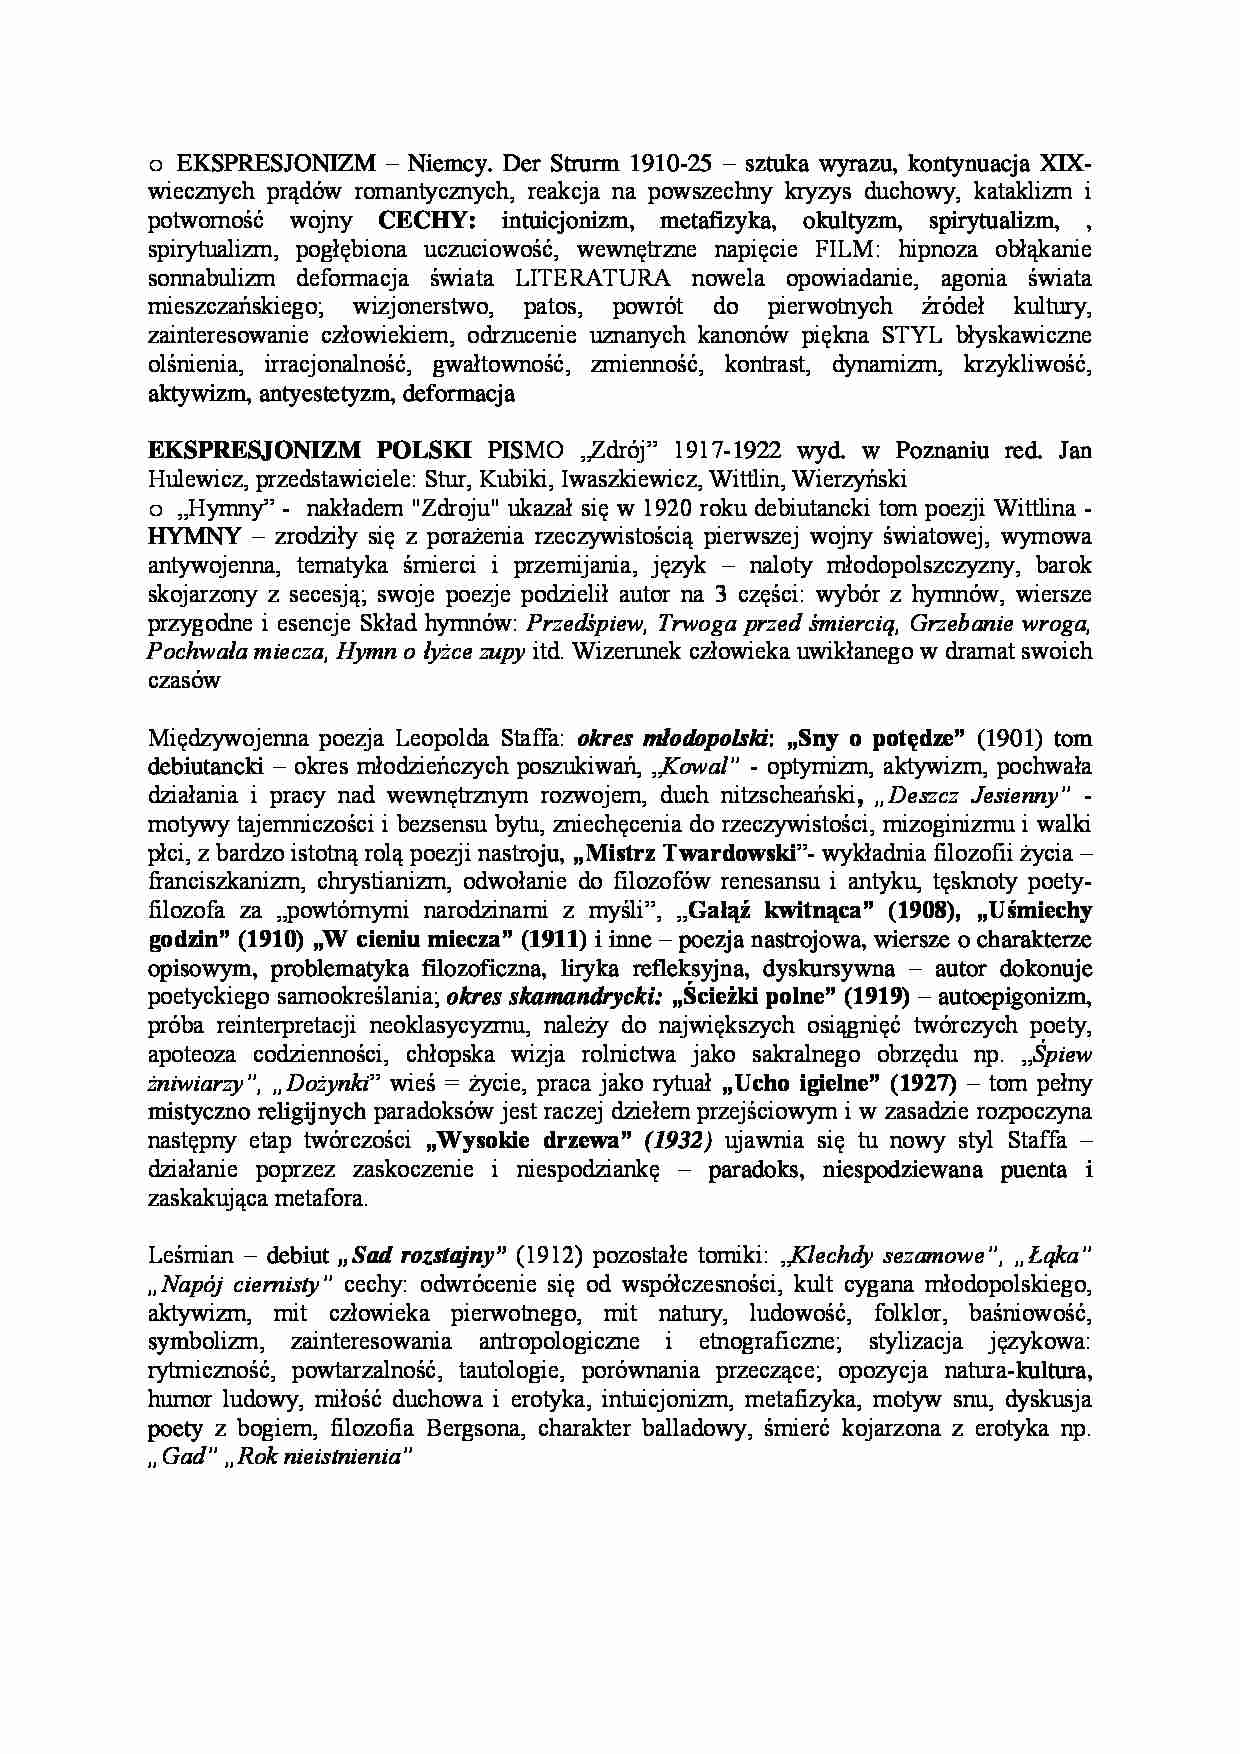 Ekspresjonizm, Ekspresjonizm polski, poezja Staffa i Leśmiana - wykład - strona 1